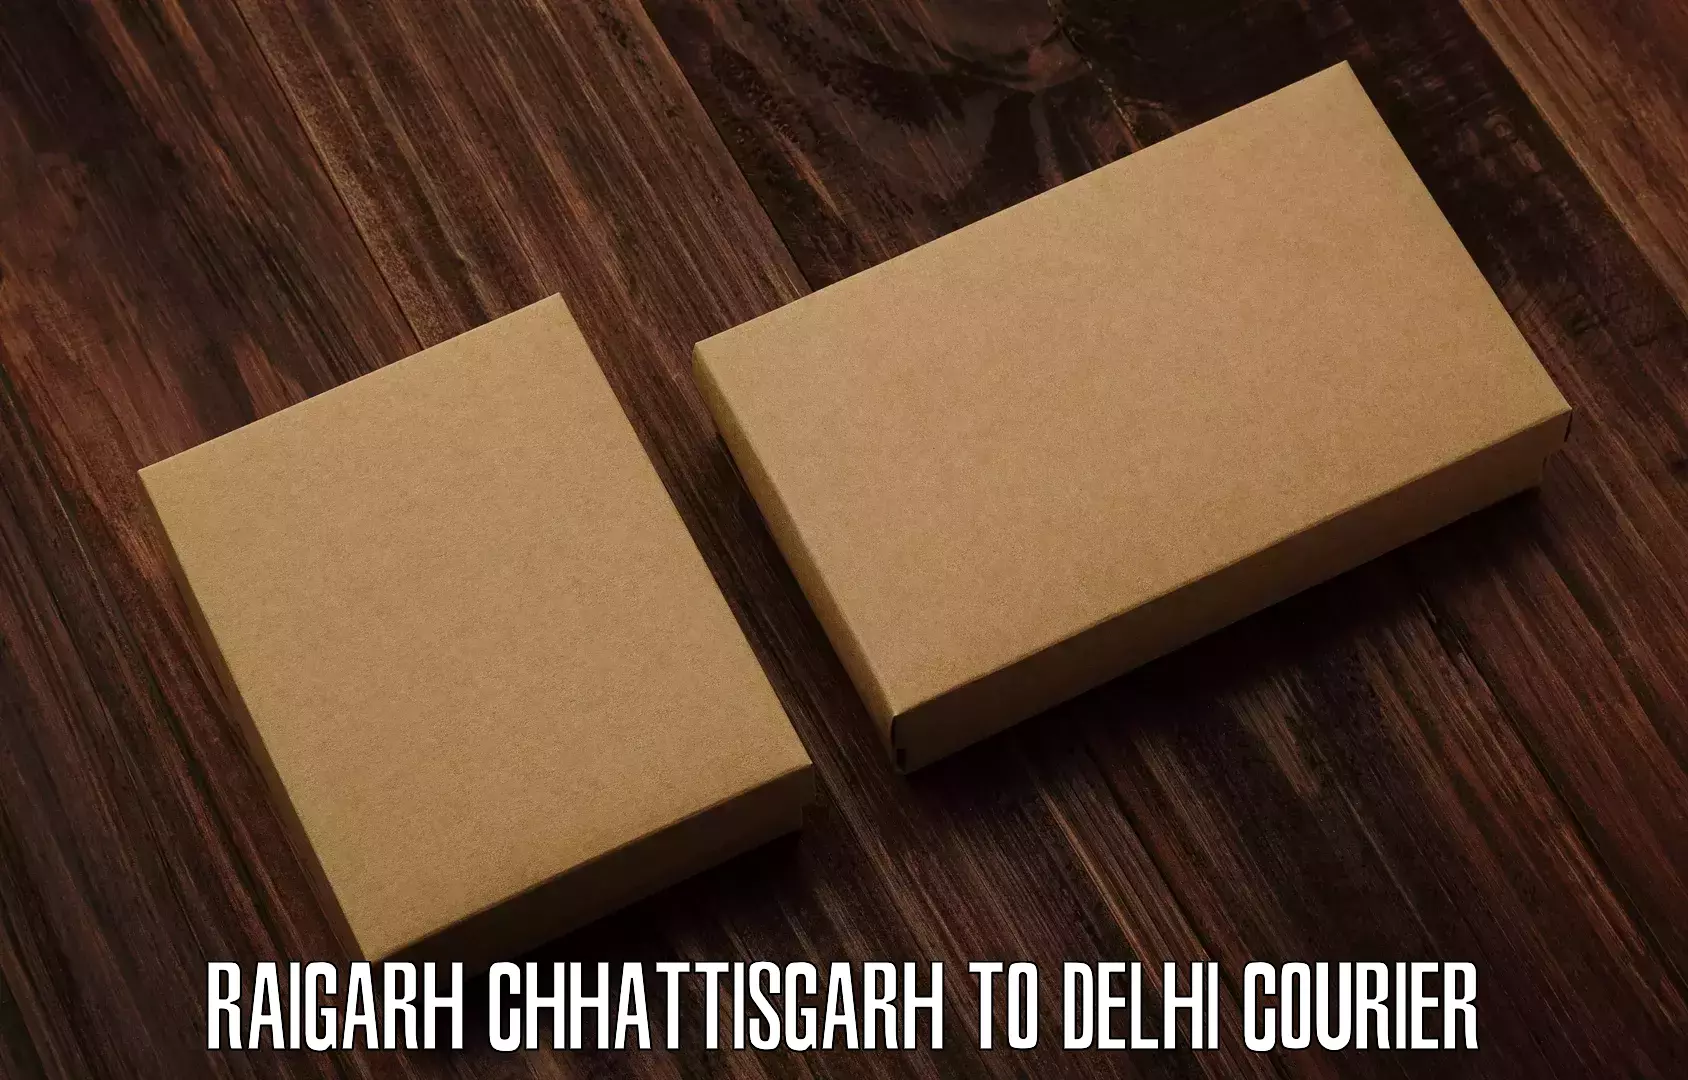 On-call courier service Raigarh Chhattisgarh to Jawaharlal Nehru University New Delhi